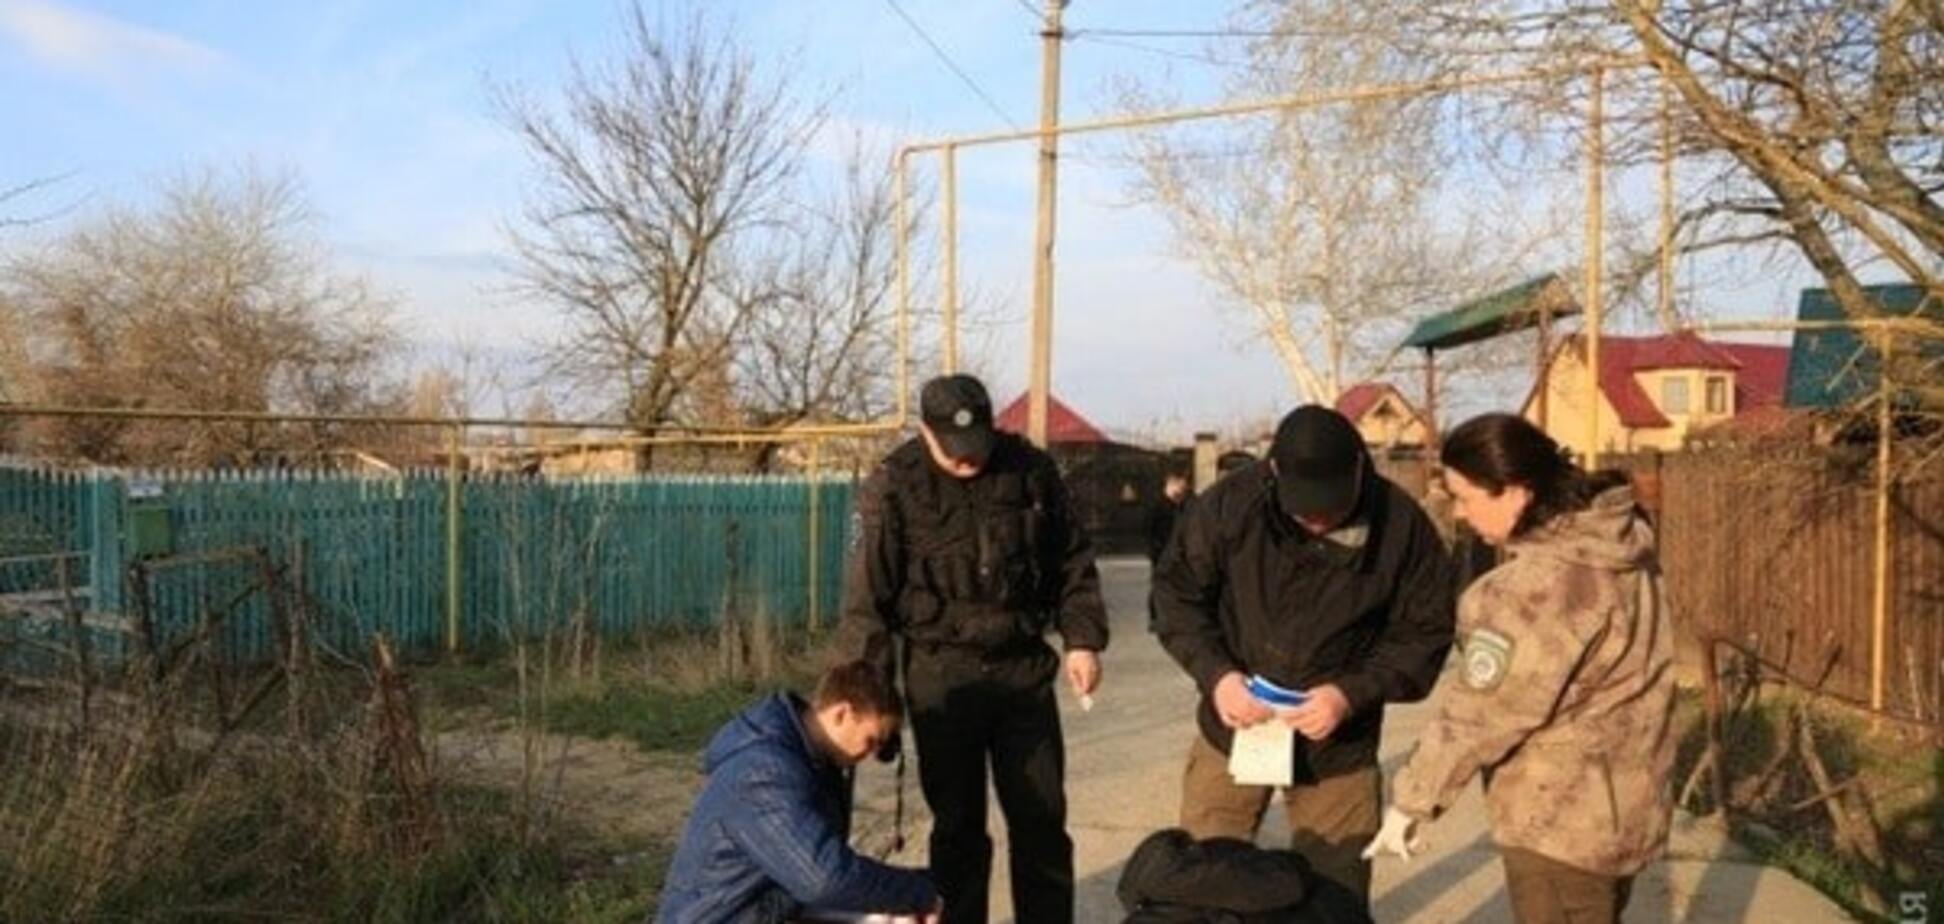 Убийство экс-депутата под Одессой: киллеры действовали по плану